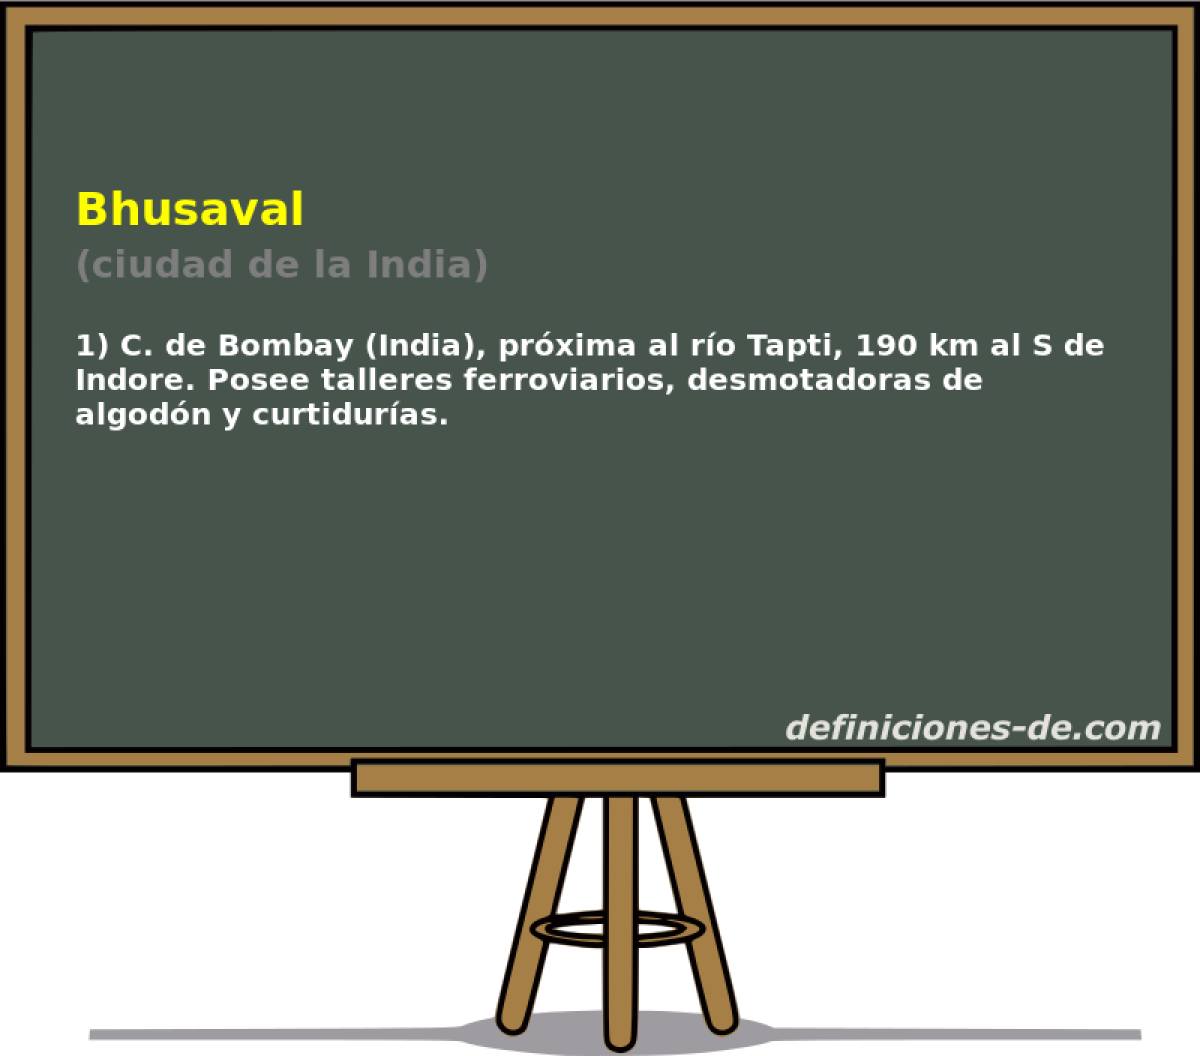 Bhusaval (ciudad de la India)